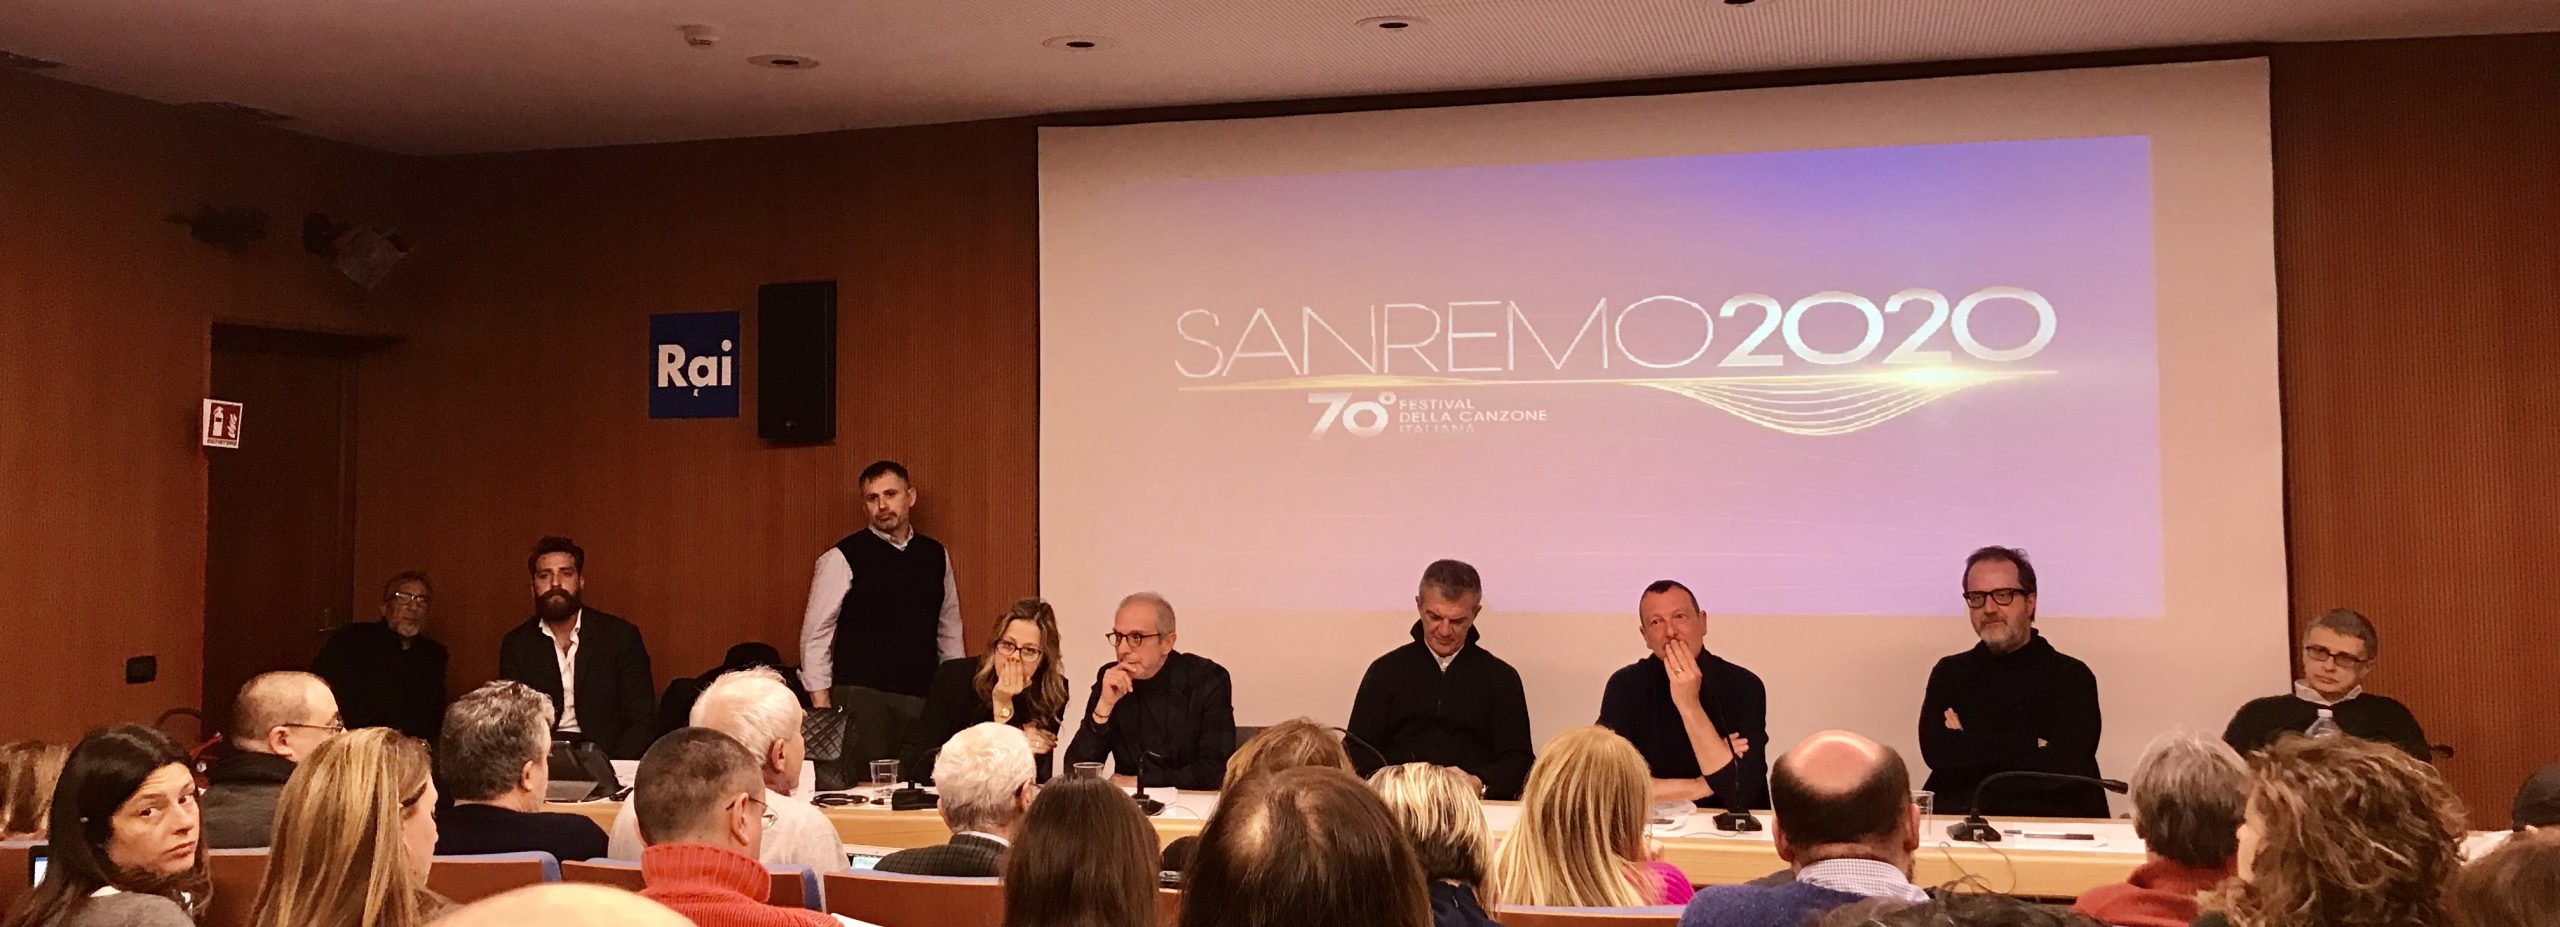 Sanremo 2020 Amadeus